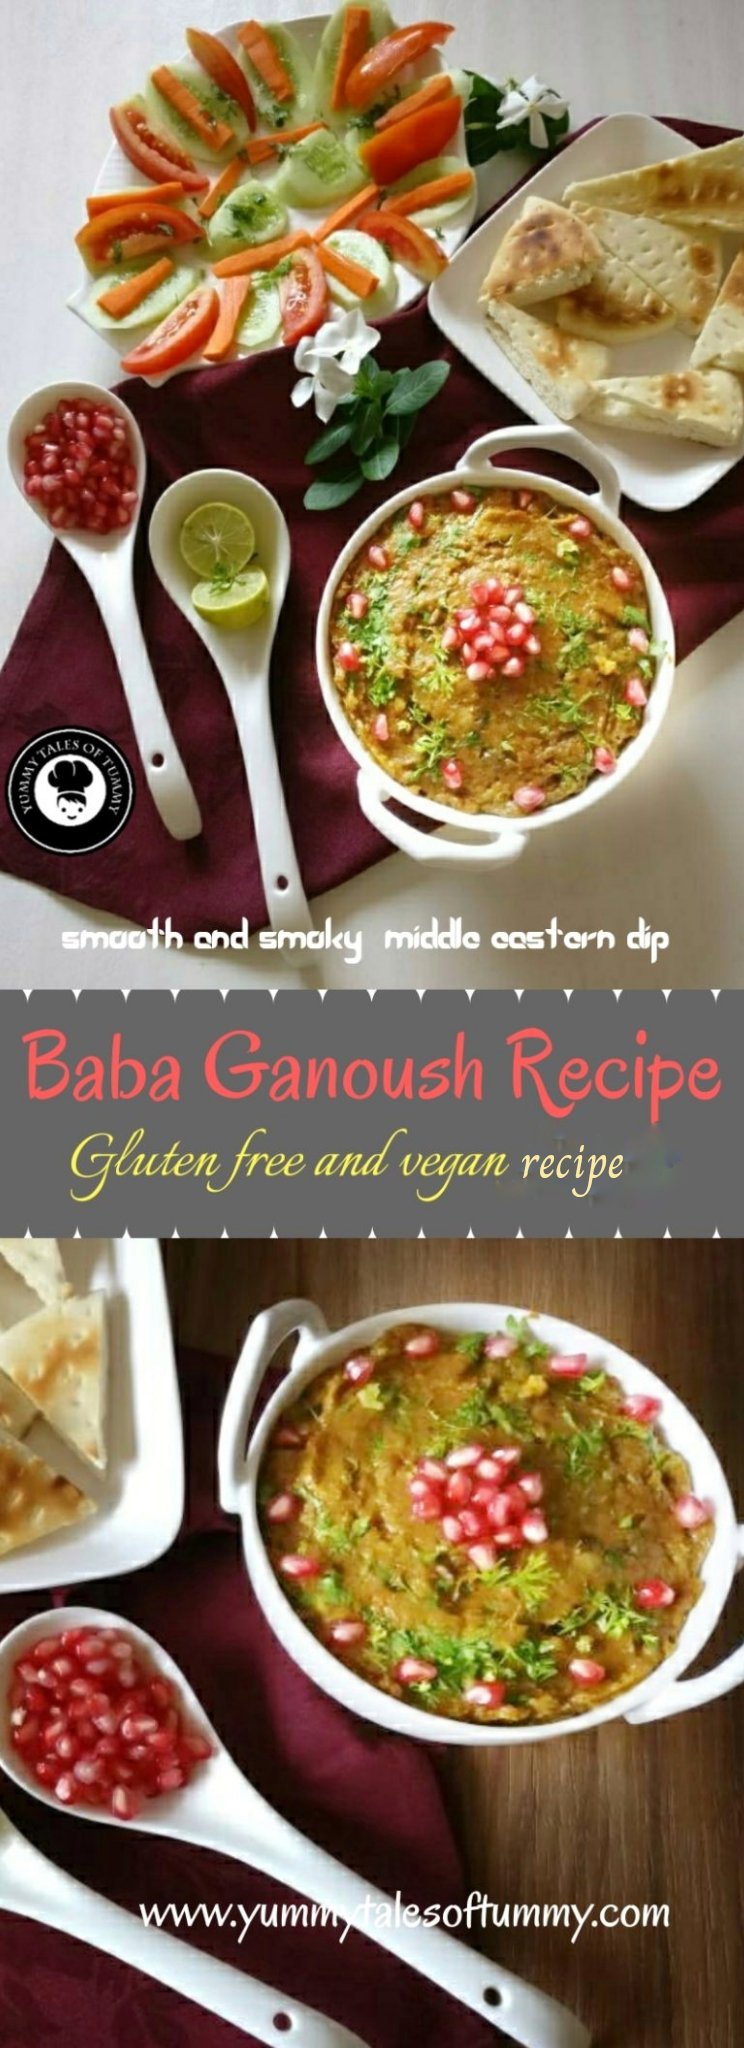 Baba Ganoush Recipe | Baba ghanouj pin 1 